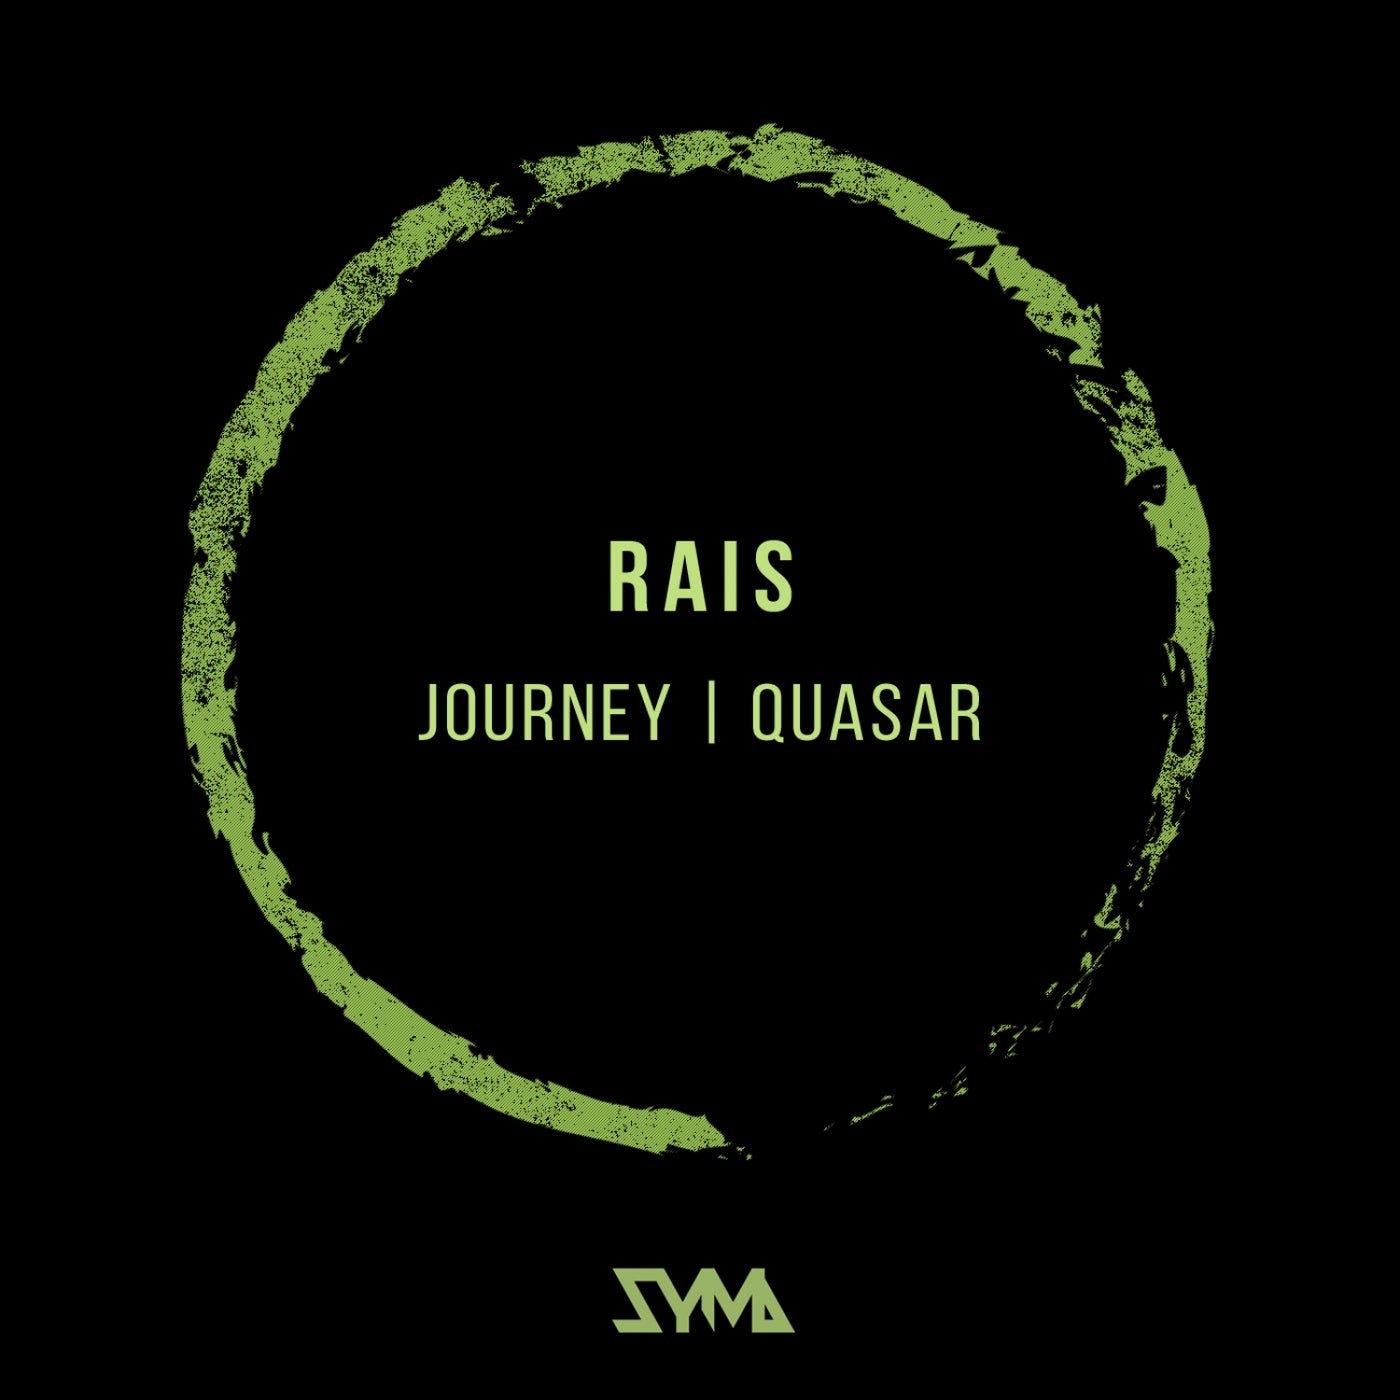 Journey /quasar